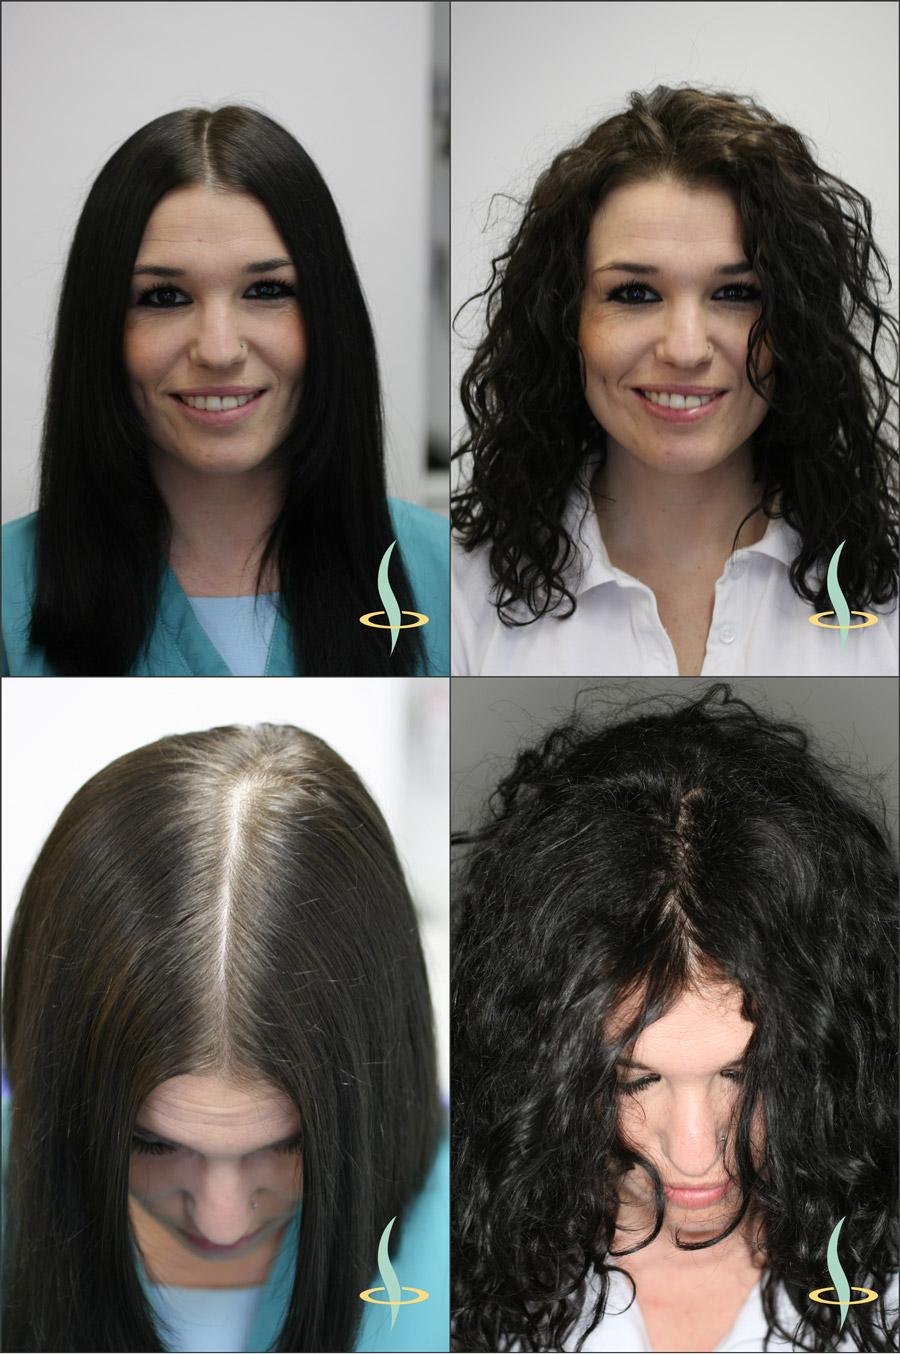 Slika 2: Optički efekat ravne (levo) i talasaste (desno) kose na vidljivost kože glave. (Izvor: grafika potiče od autora teksta)